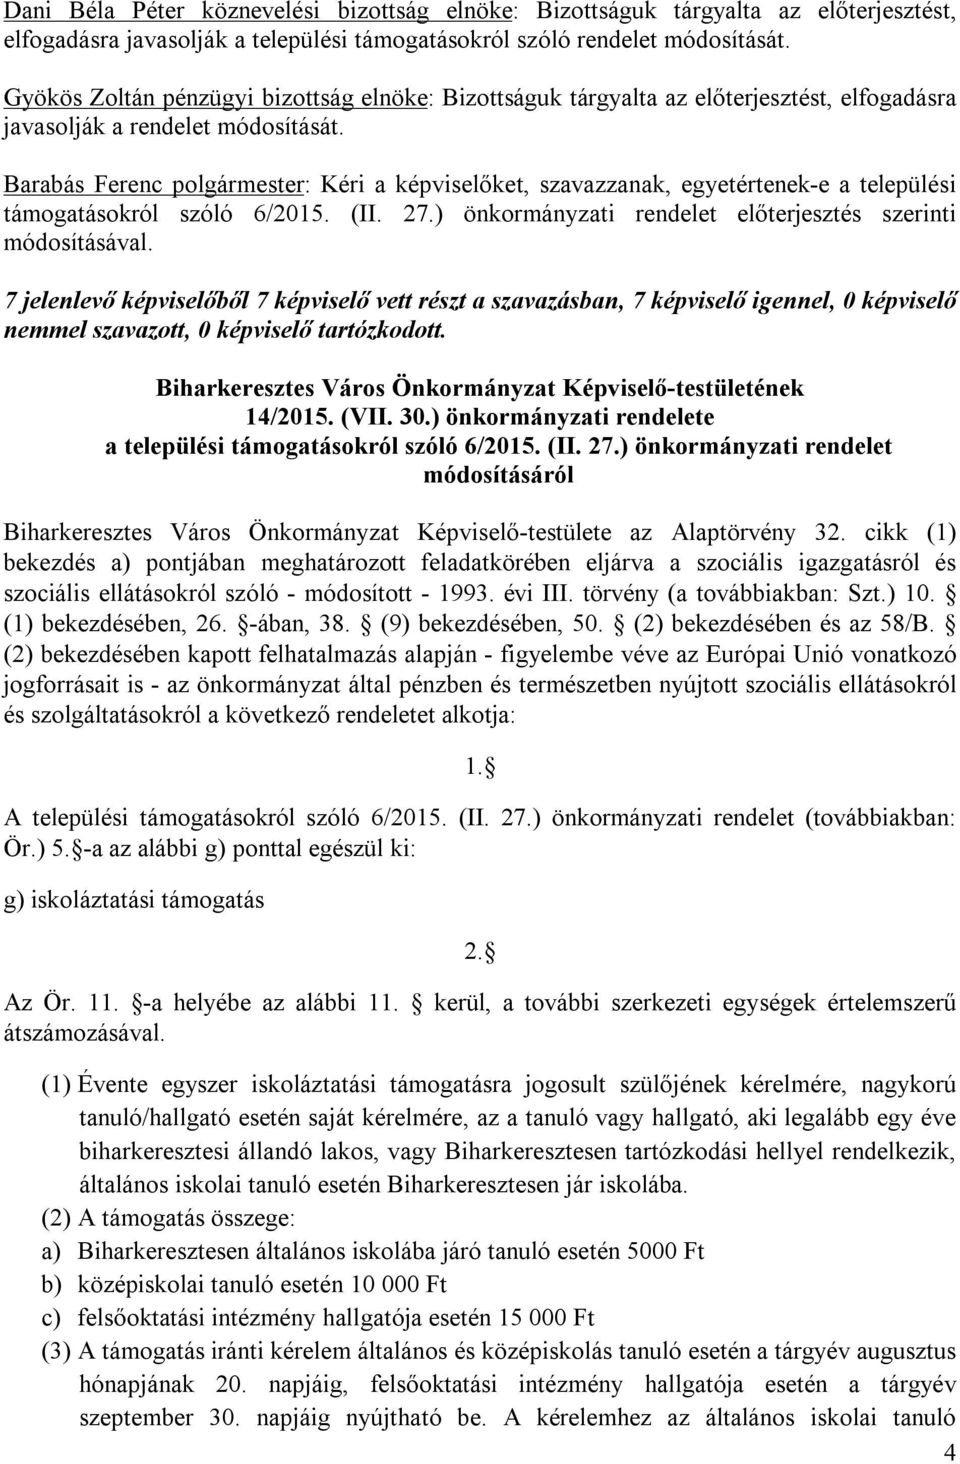 Barabás Ferenc polgármester: Kéri a képviselőket, szavazzanak, egyetértenek-e a települési támogatásokról szóló 6/2015. (II. 27.) önkormányzati rendelet előterjesztés szerinti módosításával.